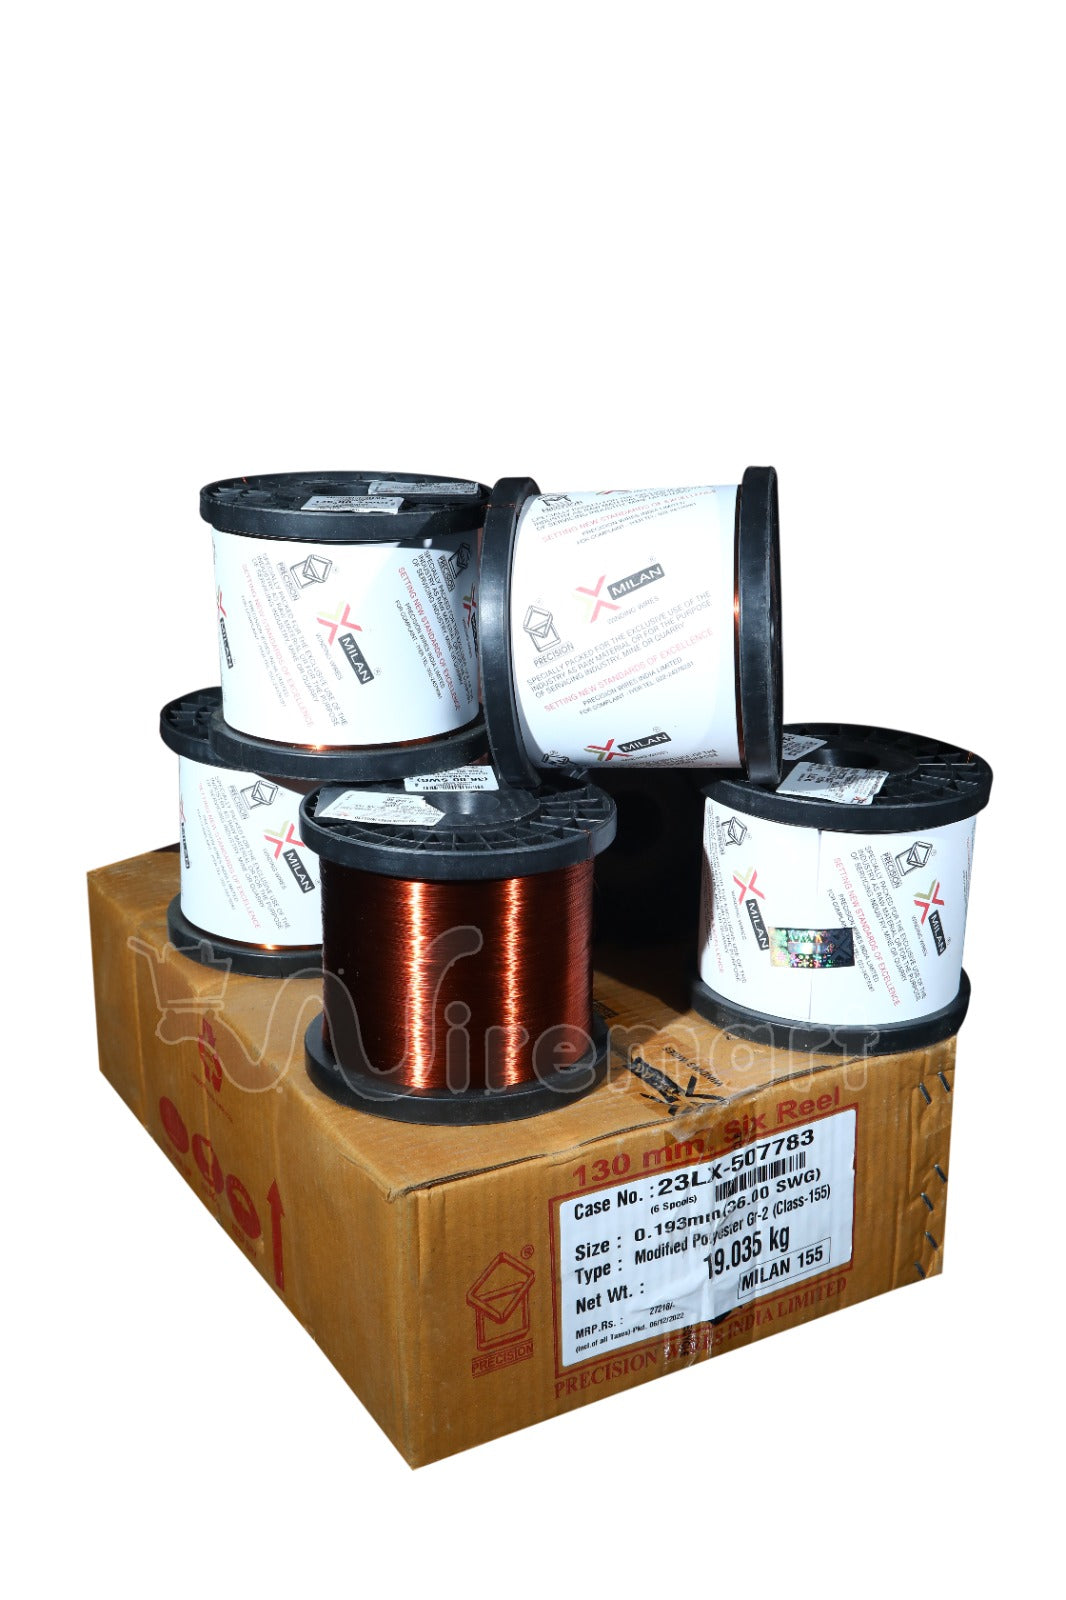 Milan Super Enamelled Copper Winding Wire  - Atlas Brand